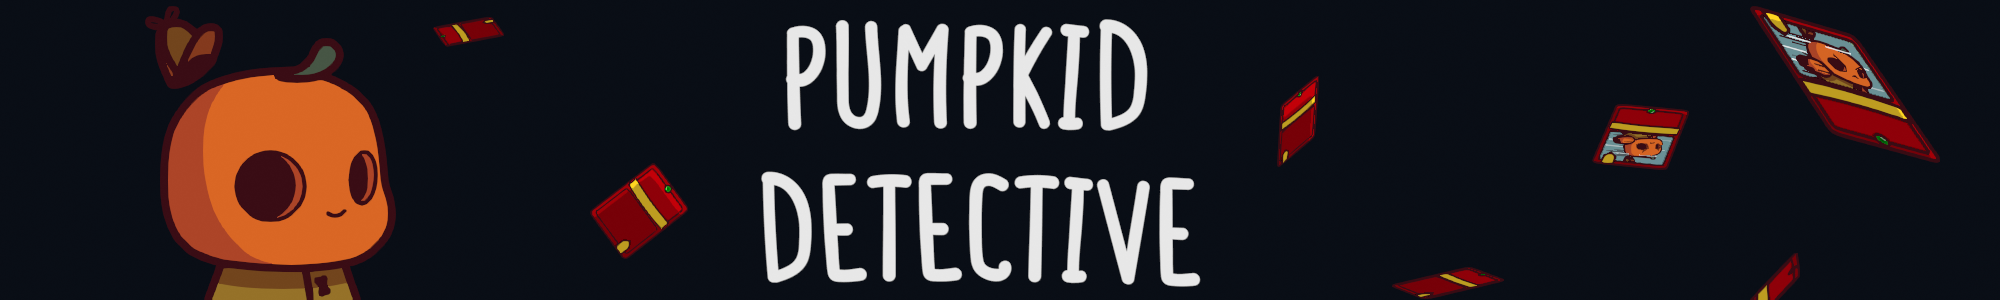 Pumpkid Detective